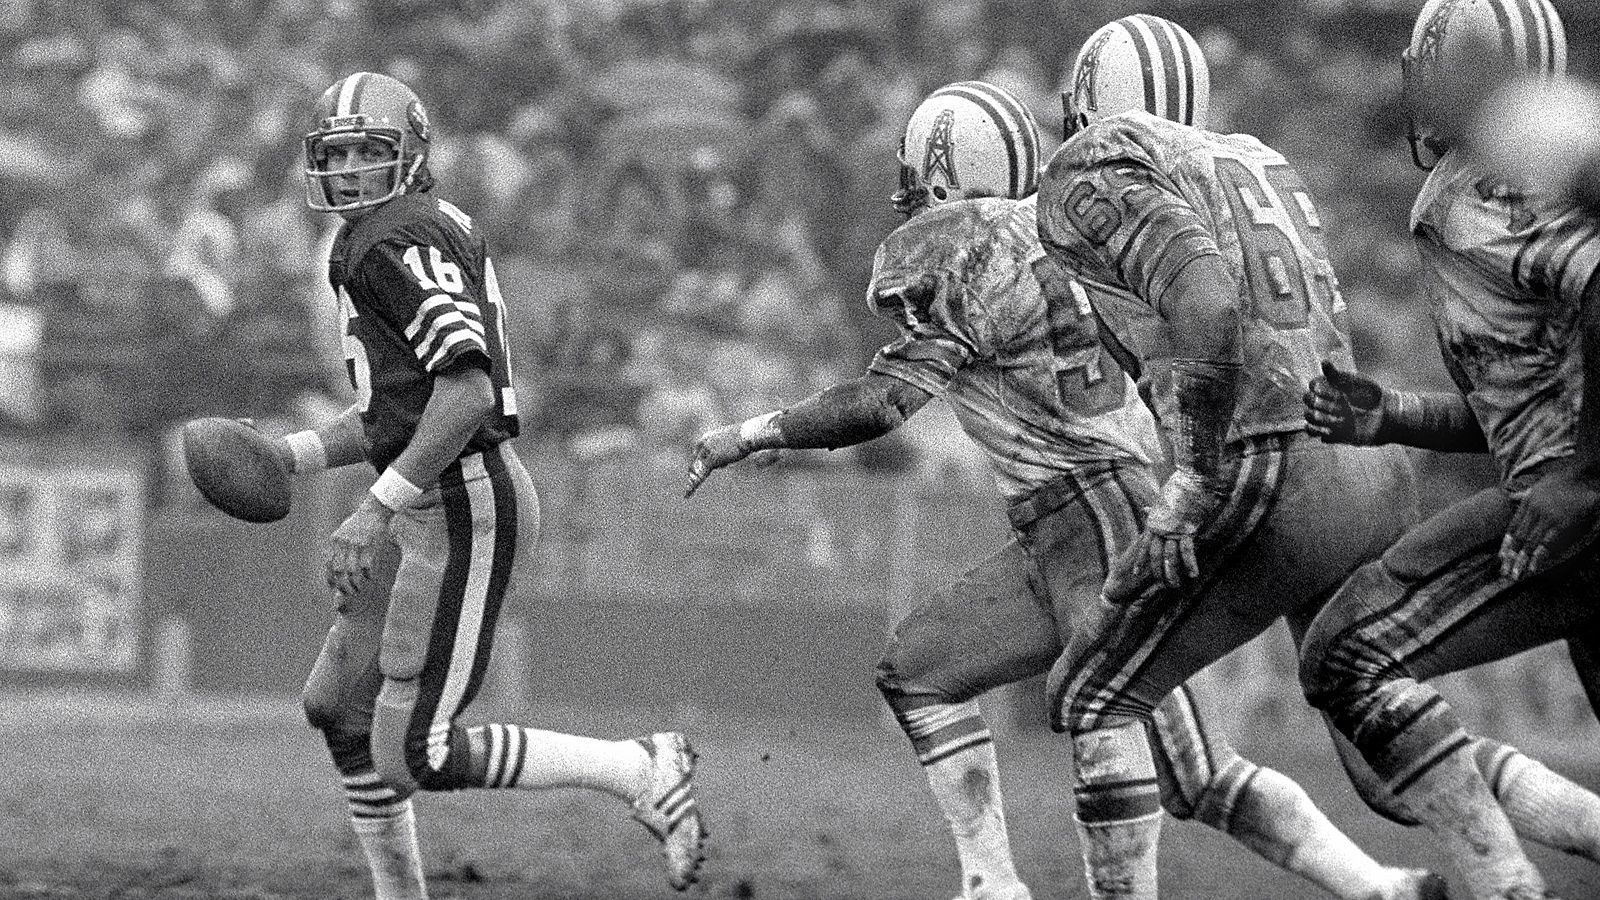 
                <strong>Joe Montana (3)</strong><br>
                Der legendäre Joe Montana, einst Quarterback der San Francisco 49ers, holte sich den MVP-Titel im Super Bowl drei Mal. In den Jahren 1982, 1985 und 1990 sicherte sich der Spieler mit der Nummer 16 den Titel zum Most Valuable Player. 
              